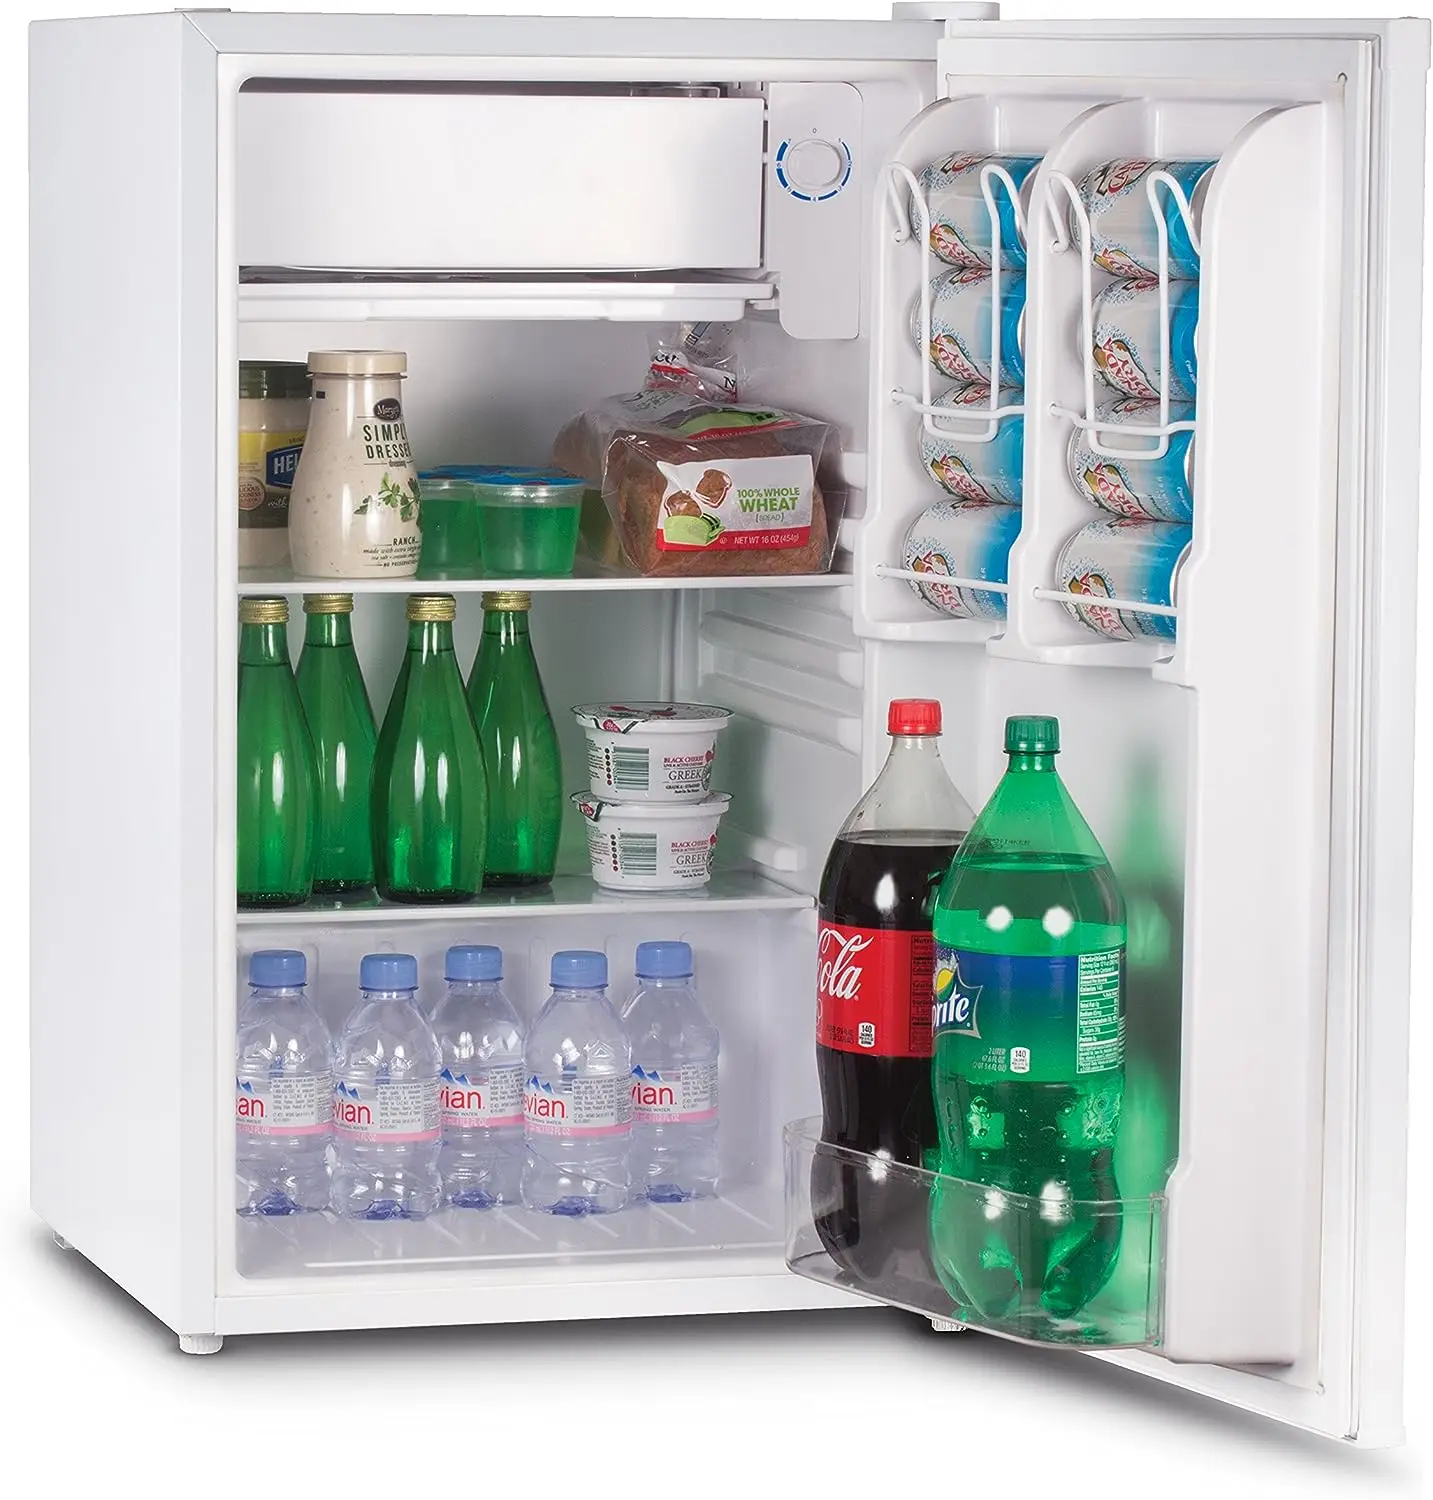 

Компактный однодверный холодильник и морозильник Cool CCR32W, 3,2 куб. Фут. Мини-холодильник, белый